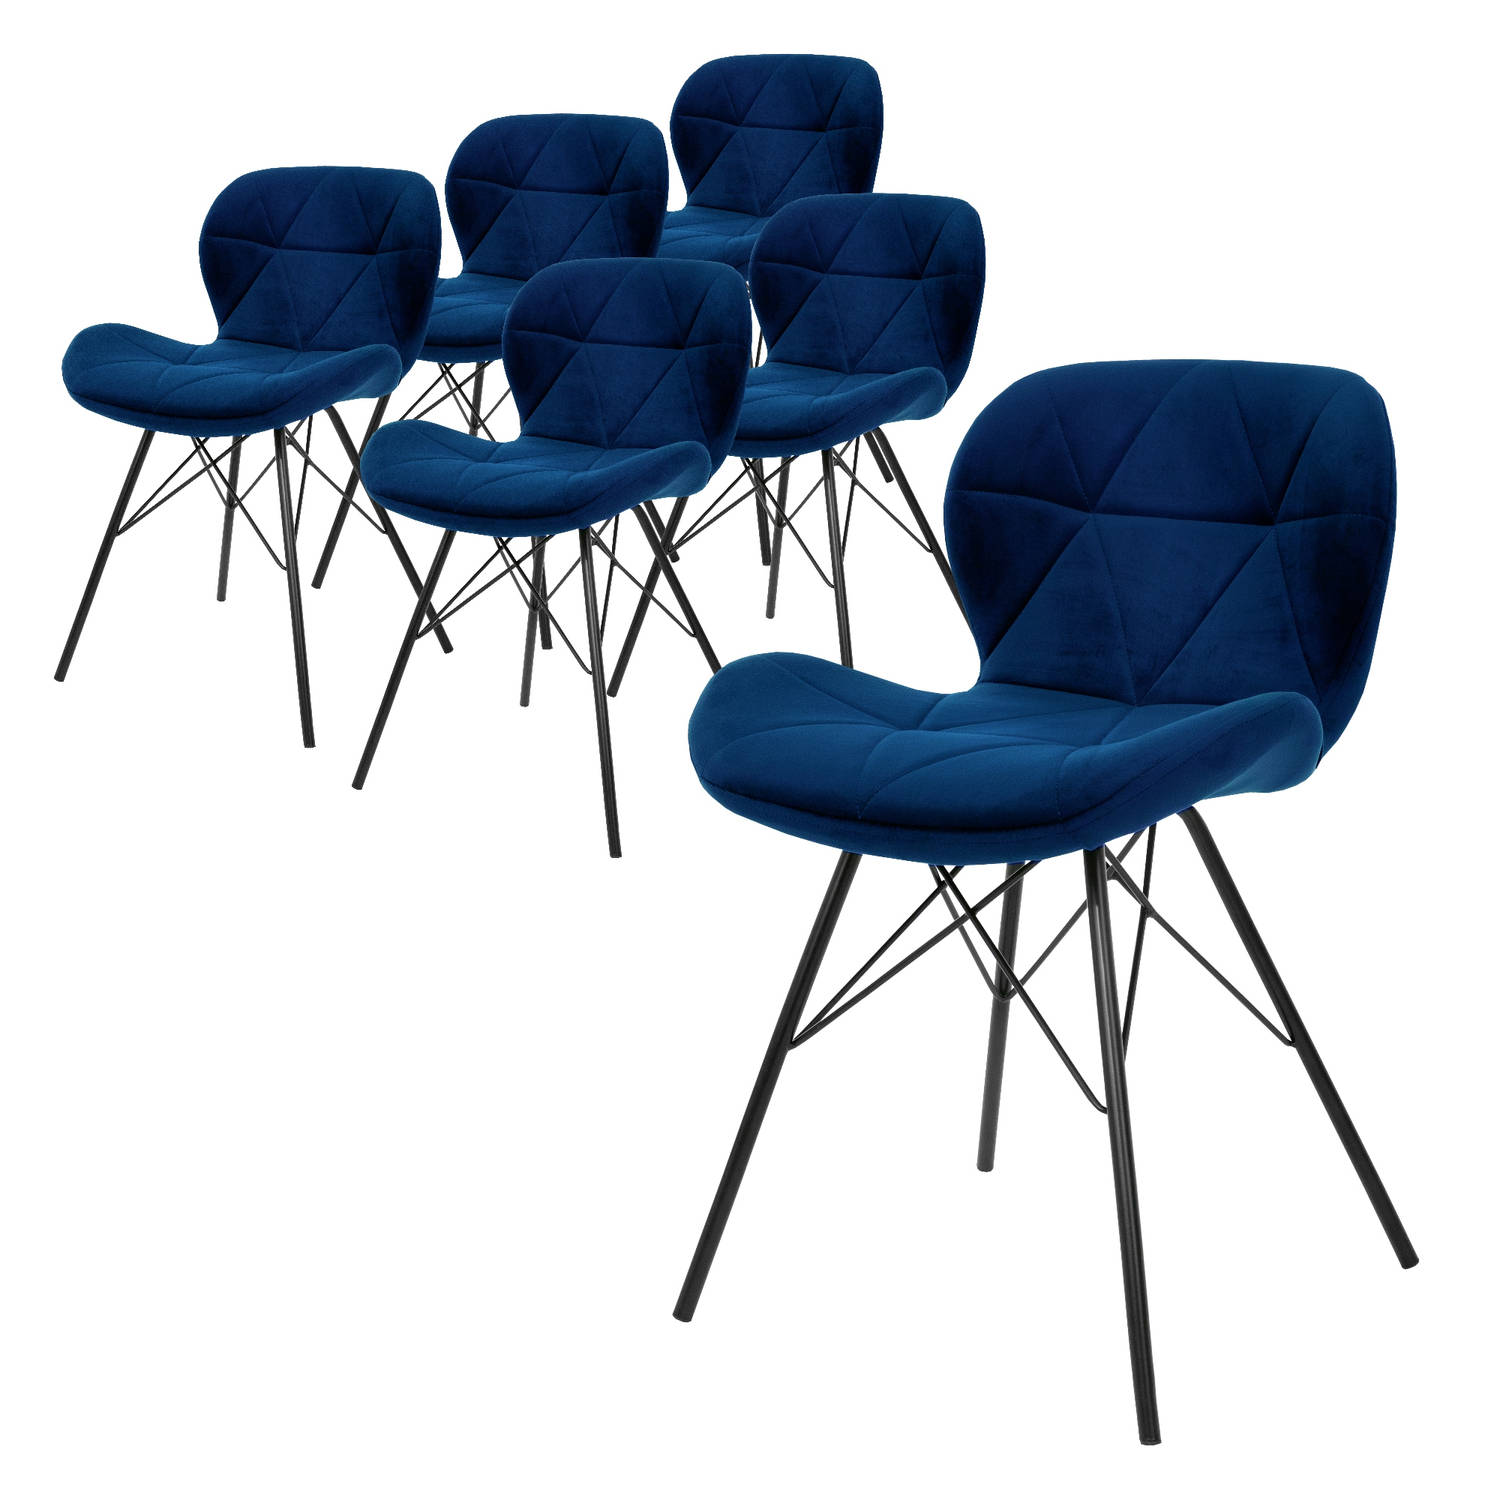 ML-Design set van 6 eetkamerstoelen met rugleuning, blauw, keukenstoel met fluwelen bekleding, gestoffeerde stoel met metalen poten, ergonomische stoel voor eettafel, woonkamerstoe